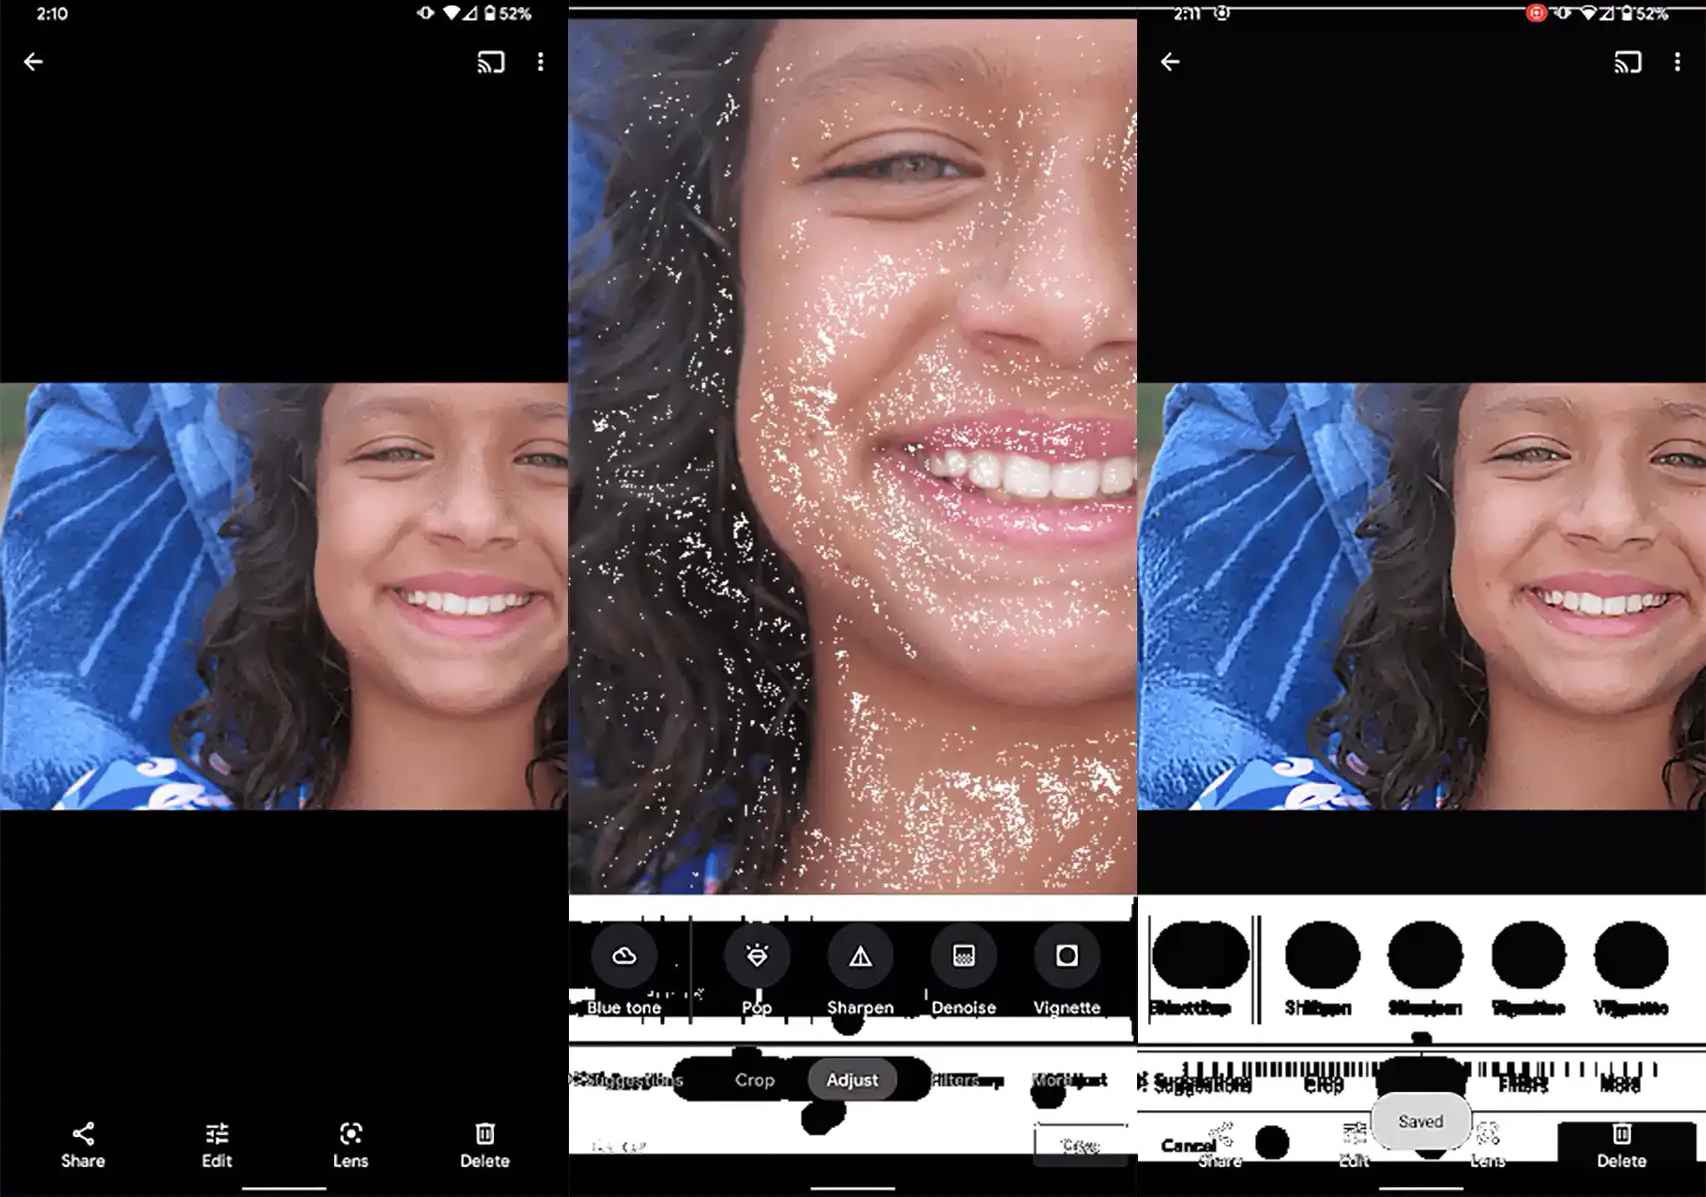 Tratamiento de imágenes por la tecnología de Google para la cámara